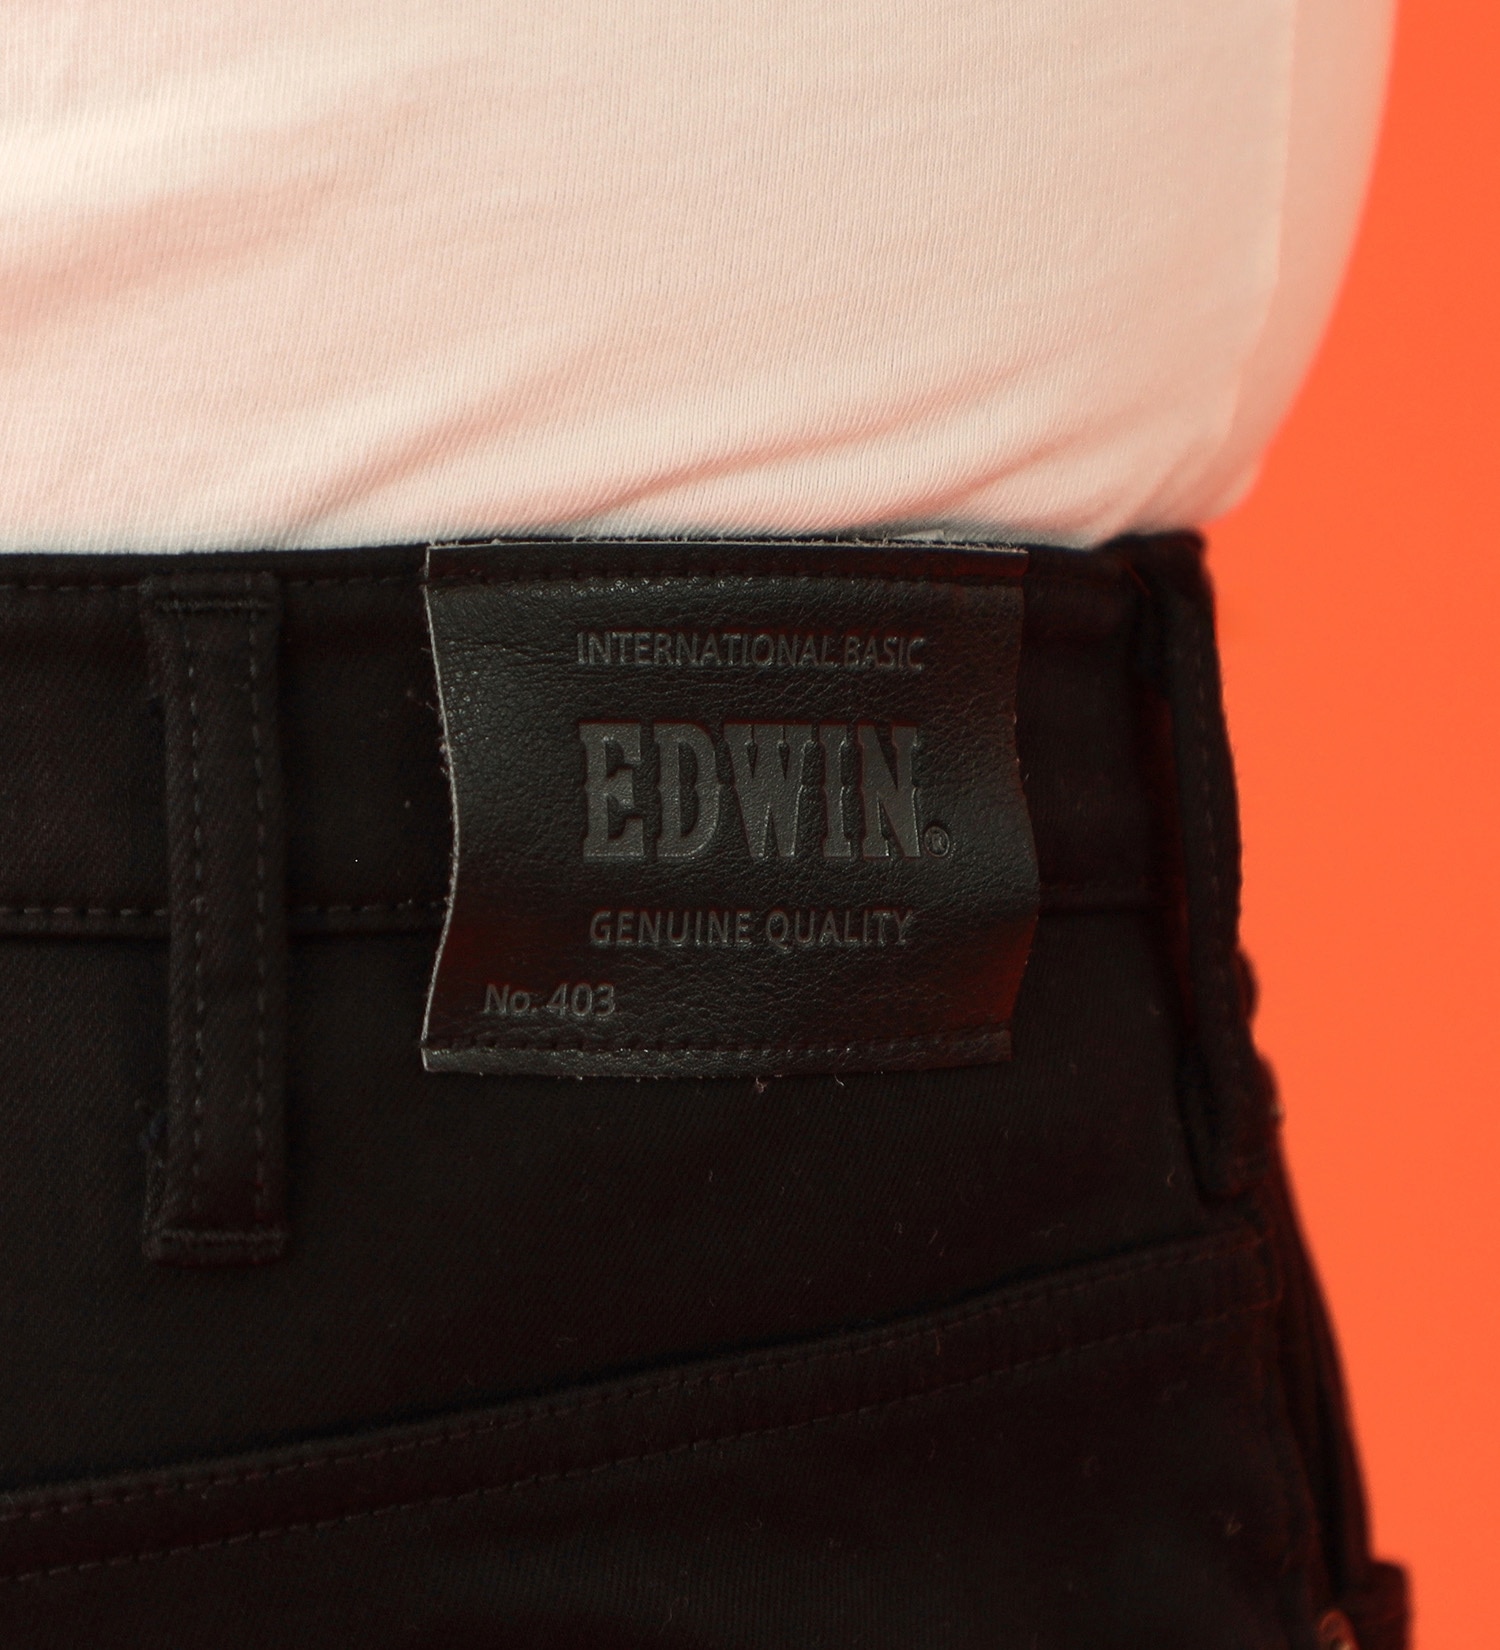 EDWIN(エドウイン)の【カート割】【SALE】【大きいサイズ】2層で暖かい EDWIN インターナショナルベーシック レギュラーストレートパンツ403 WILD FIRE 2層ボンディング構造 【暖】|パンツ/パンツ/メンズ|ブラック